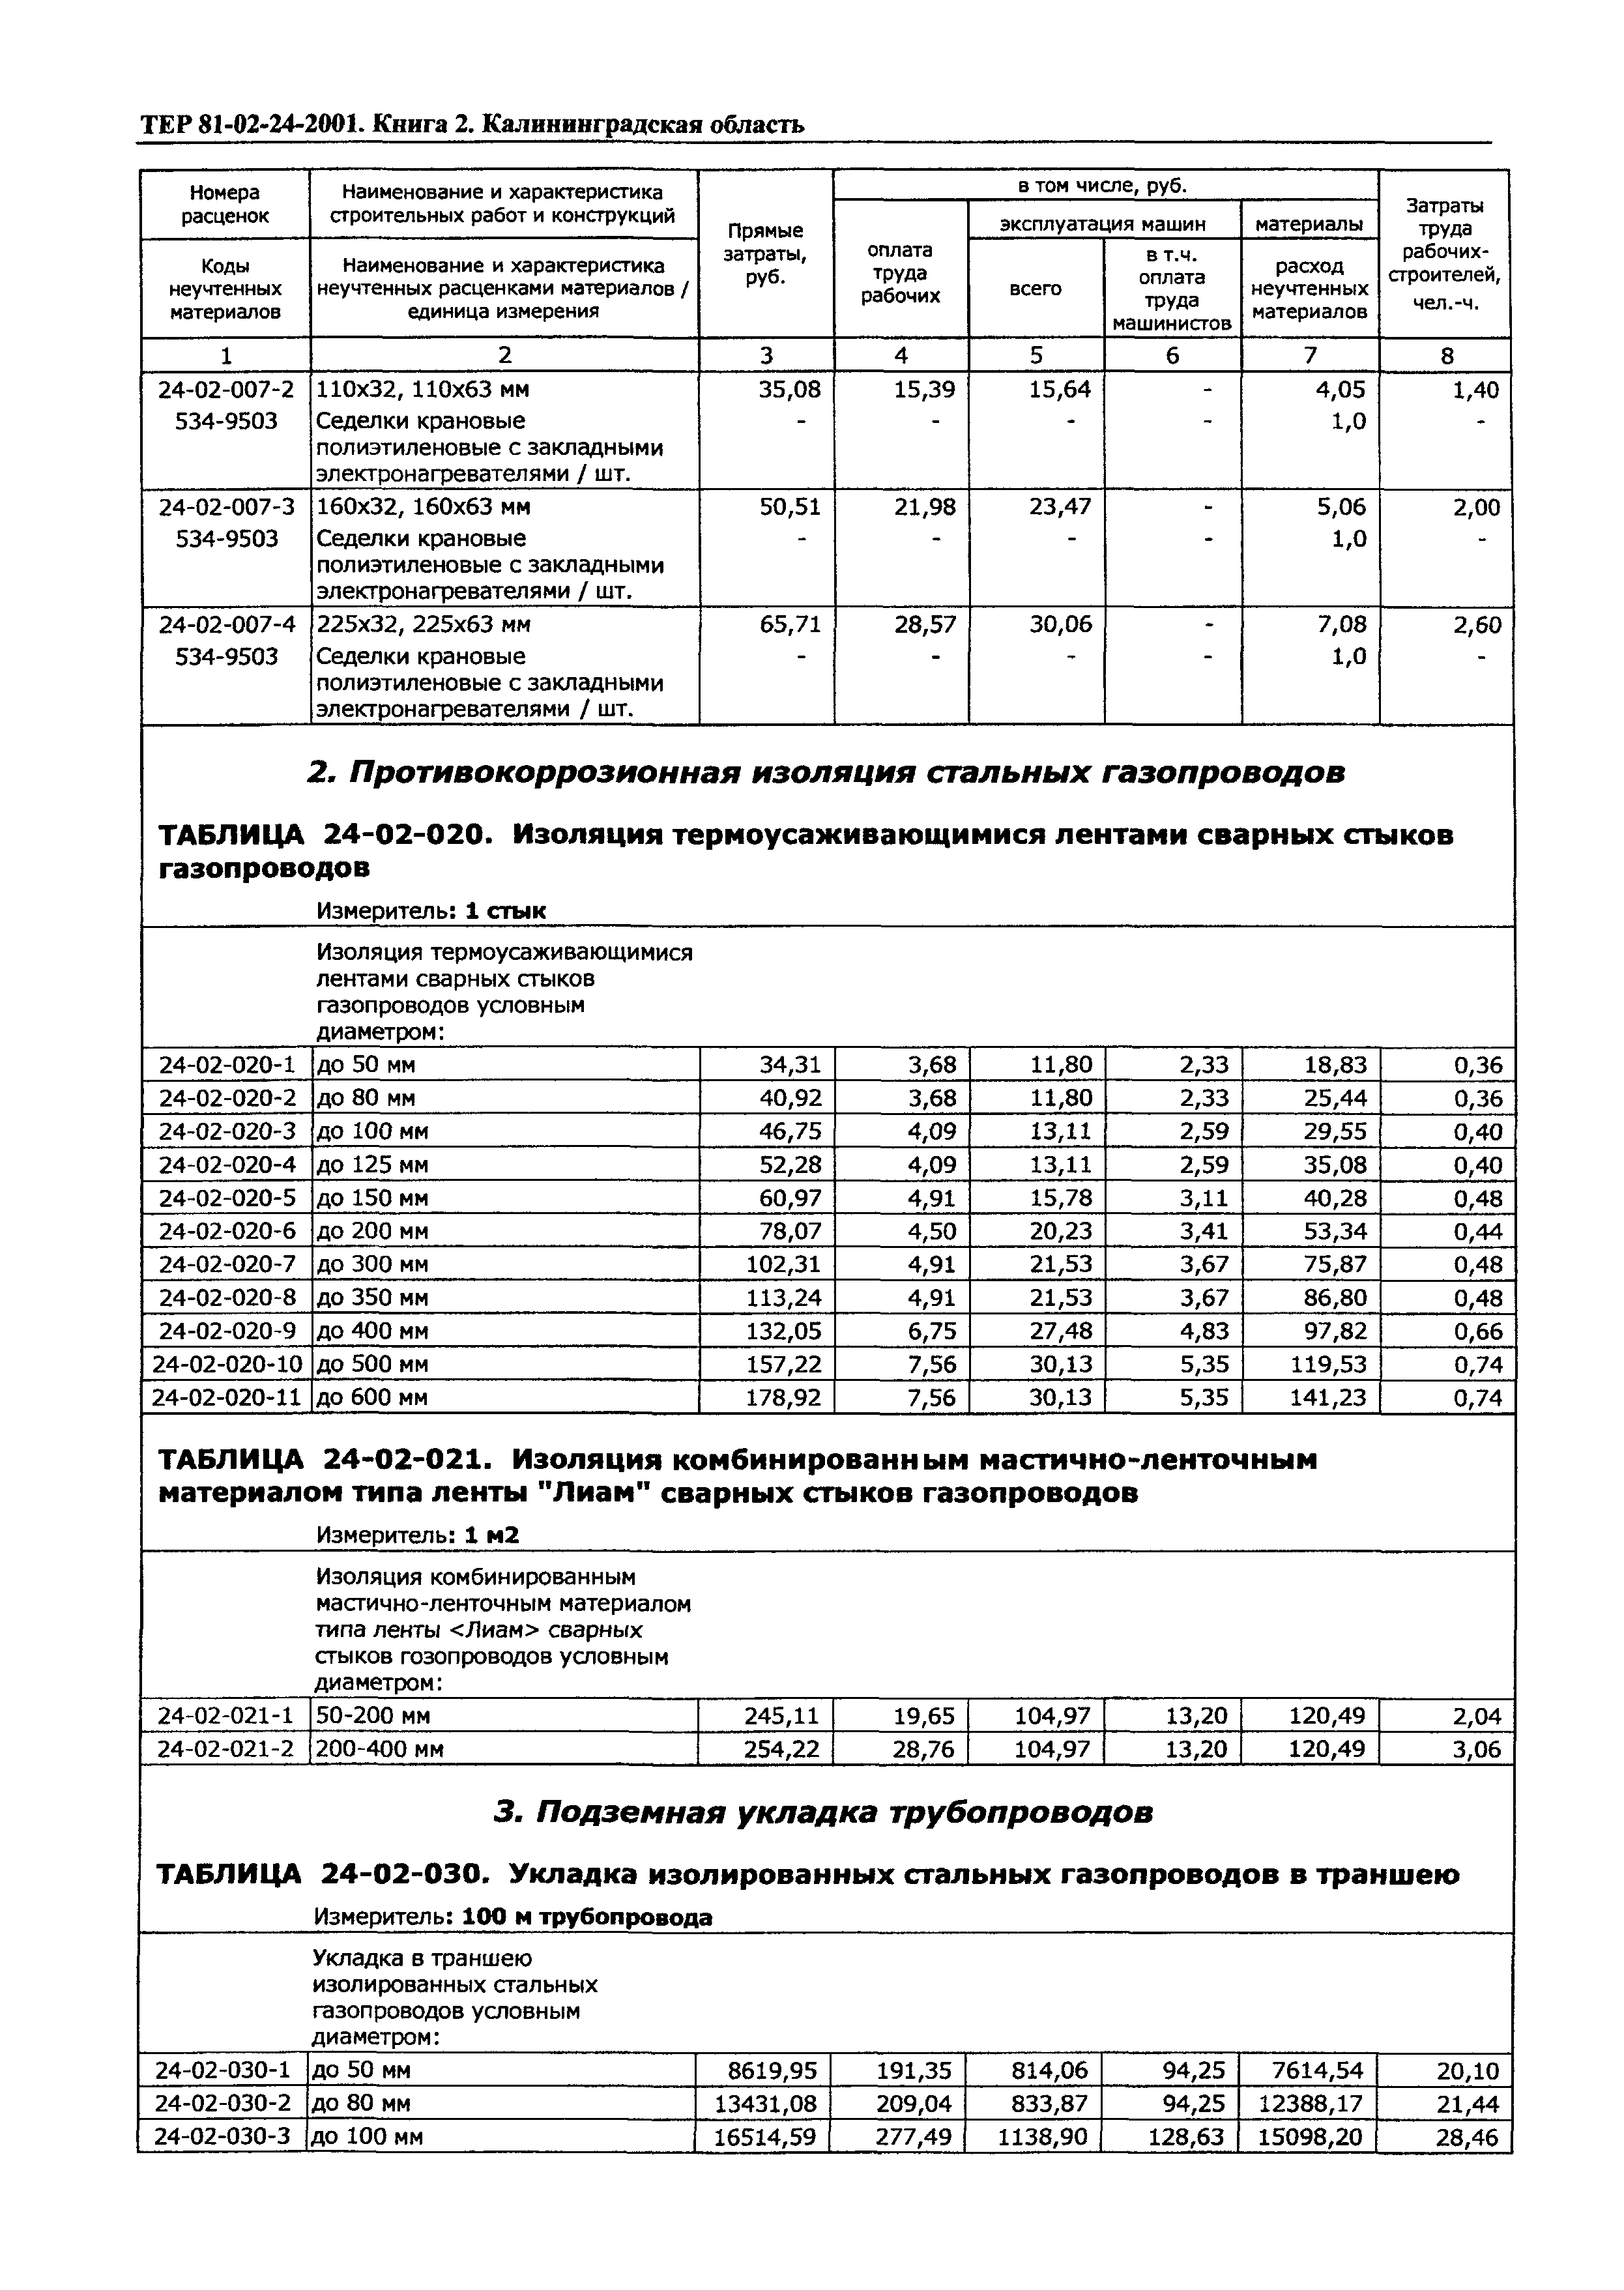 ТЕР Калининградская область 2001-24